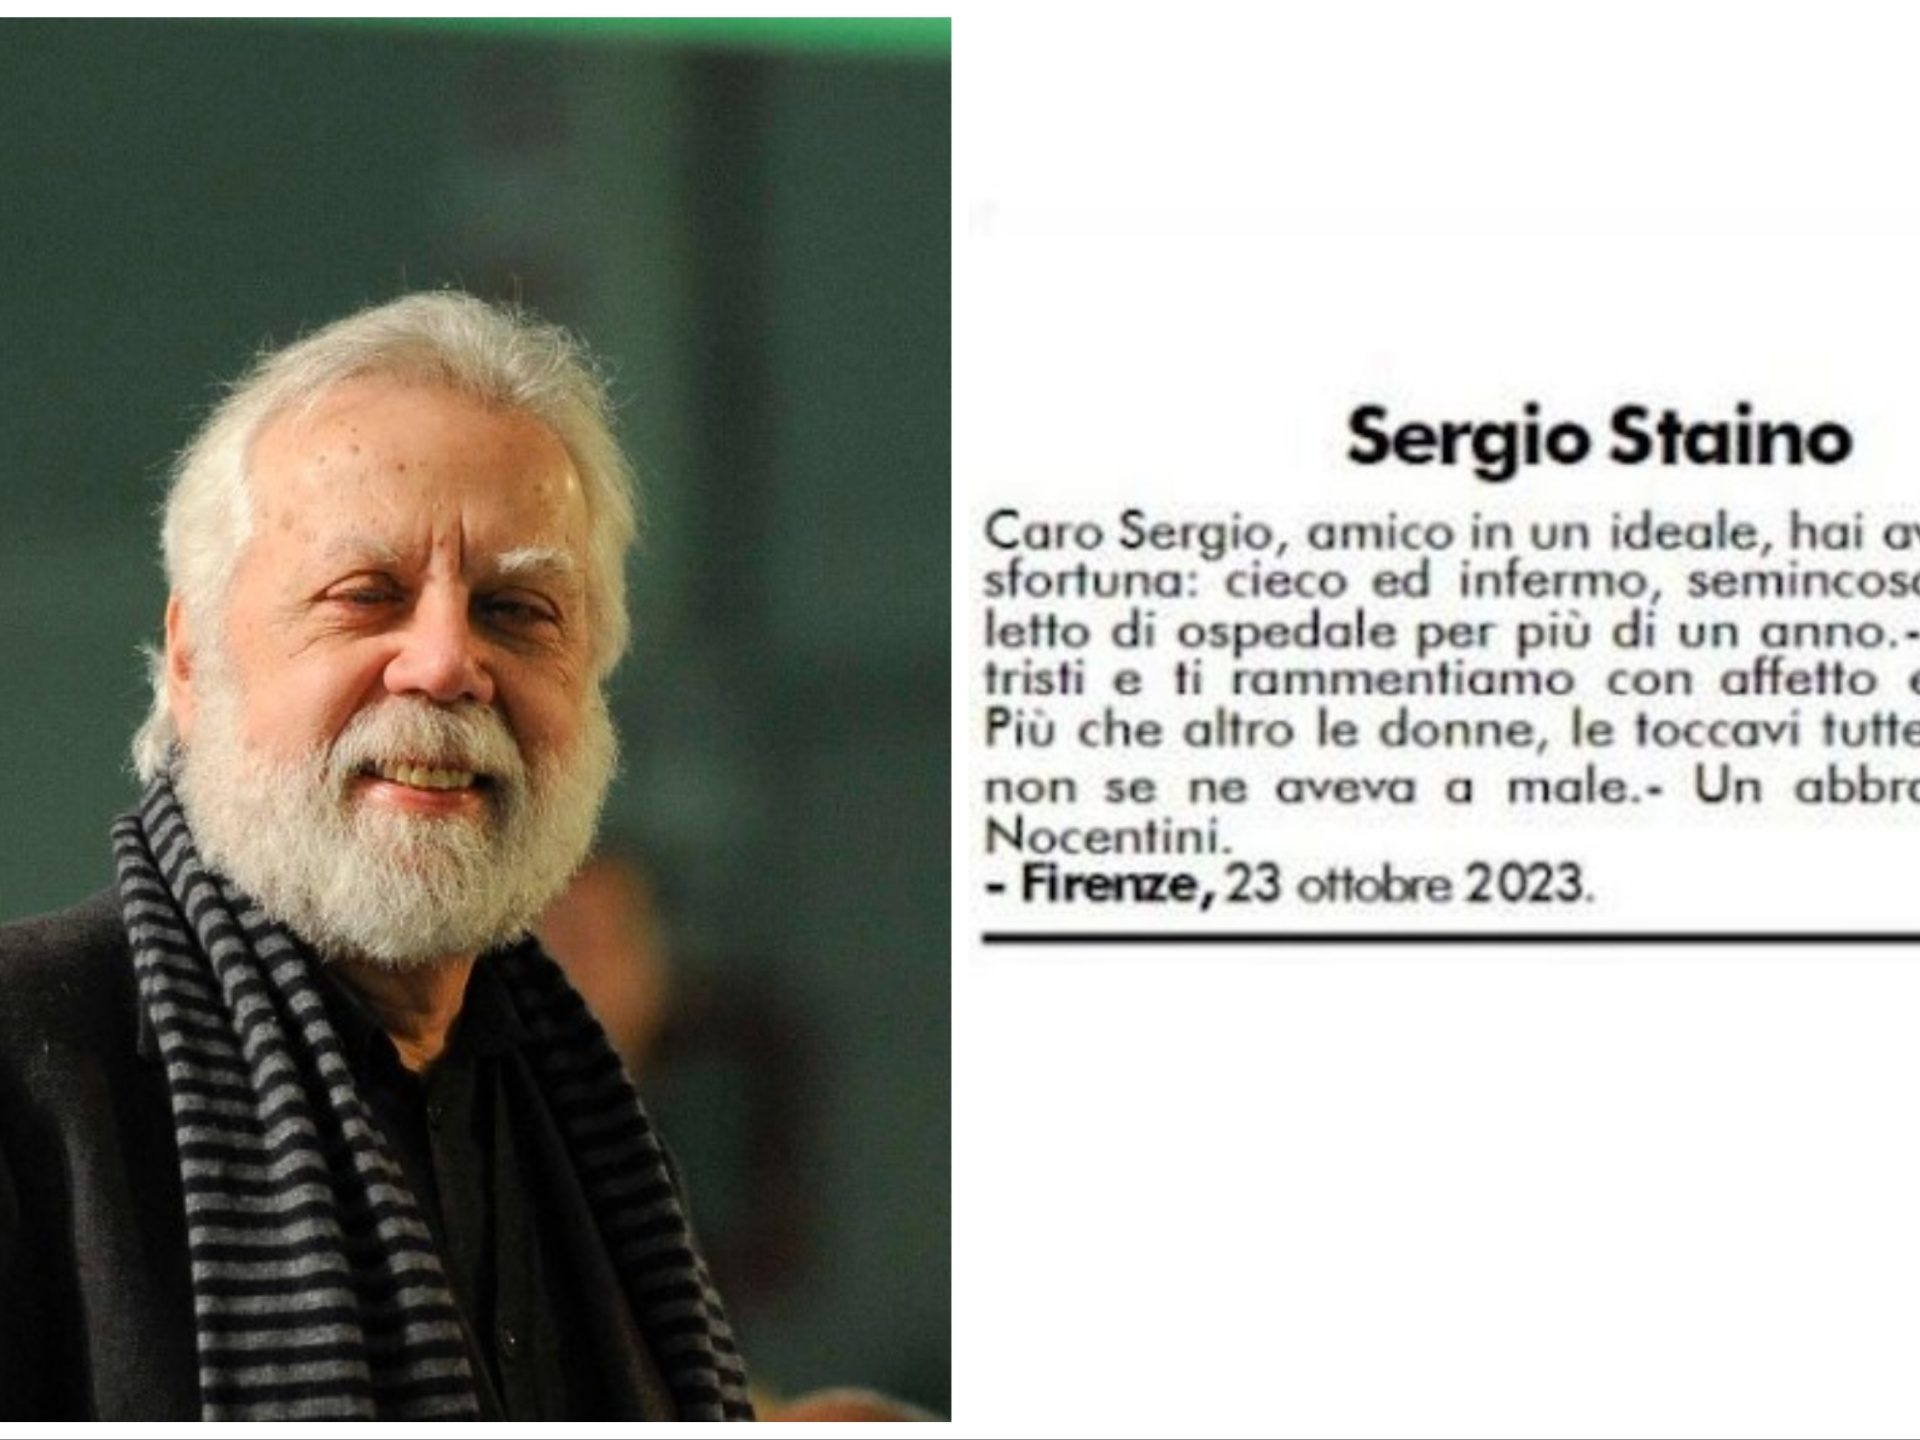 Sergio Staino y el toque de mujeres: un obituario genera polémica